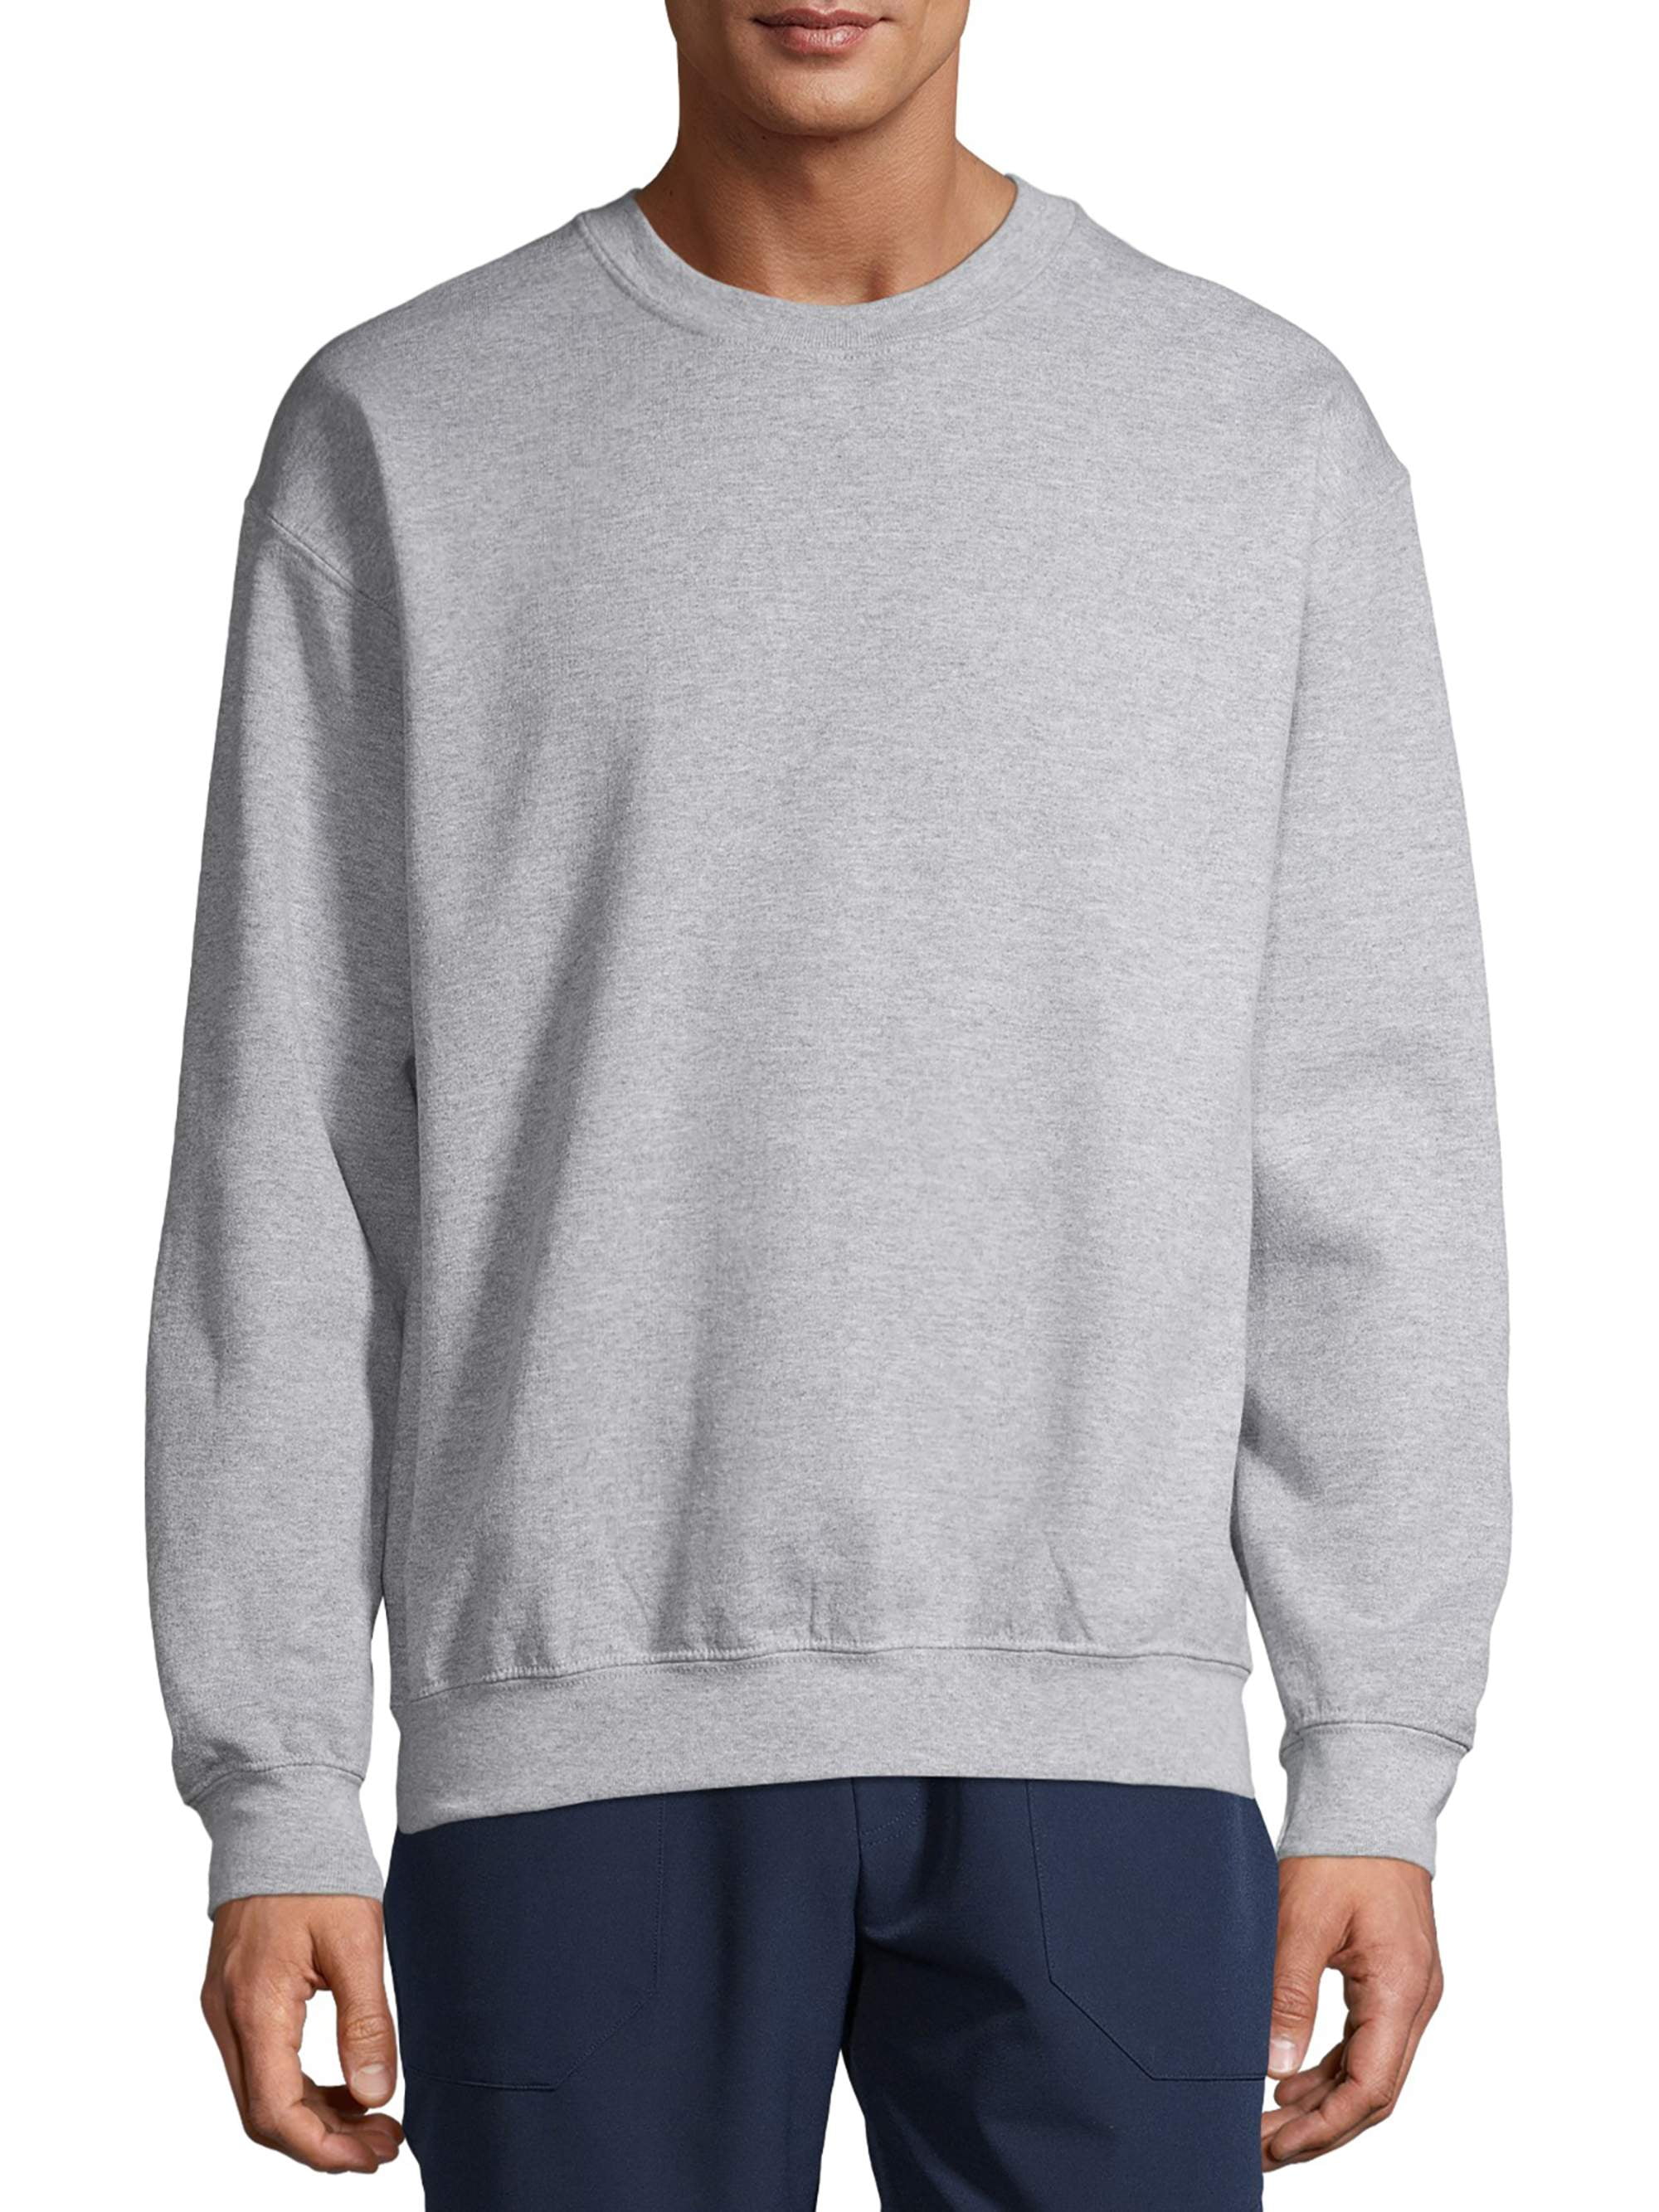 Gildan Men's Fleece Crewneck Sweatshirt, Style G18000 Navy